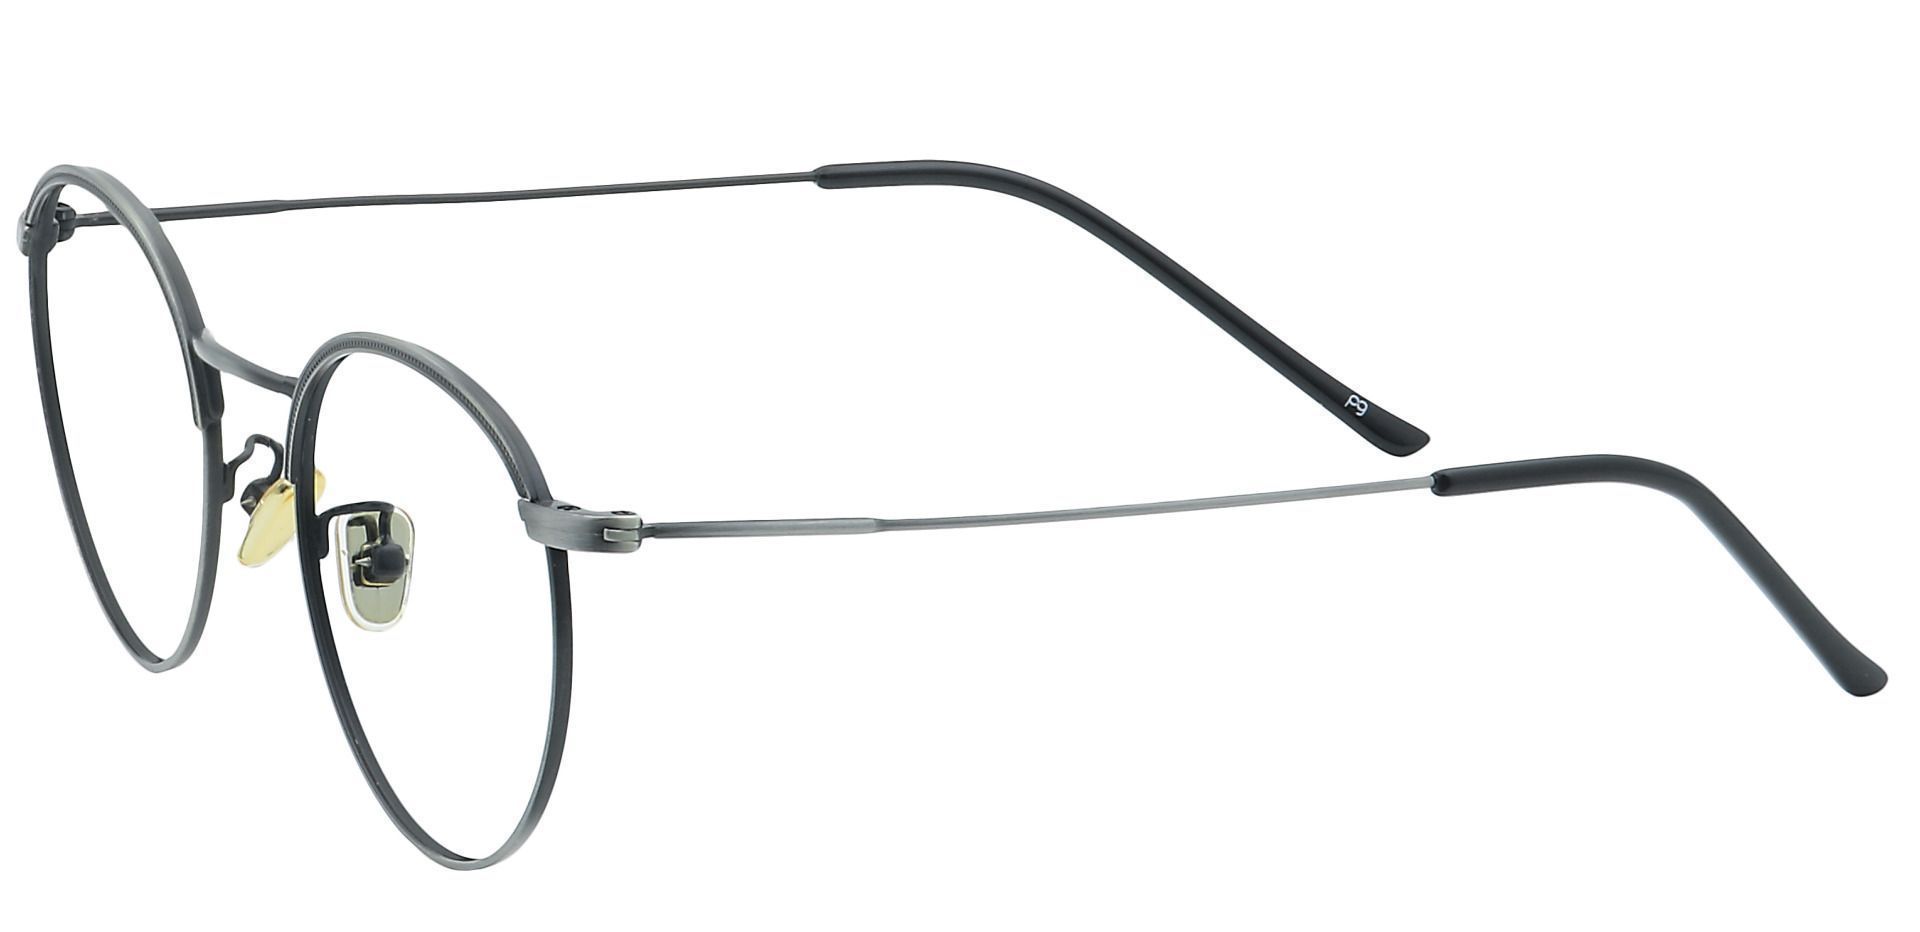 Cooper Oval Eyeglasses Frame - Gray | Men's Eyeglasses | Payne Glasses